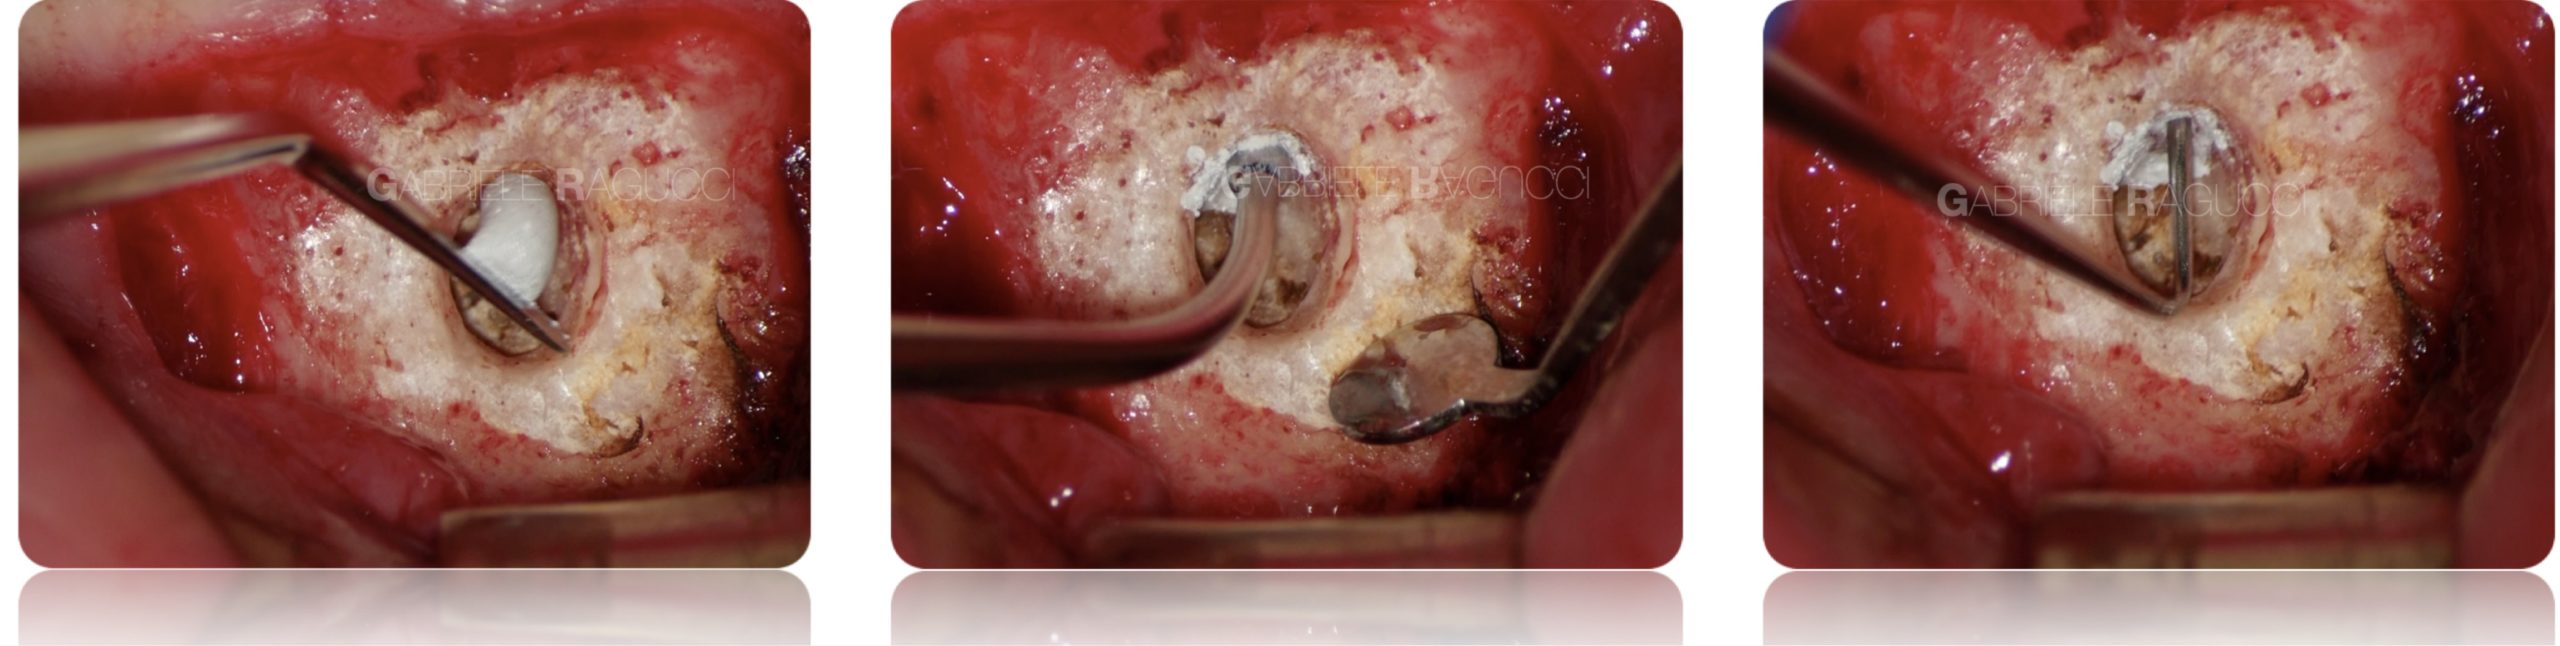 Endodontic surgery of an inferior central incisor